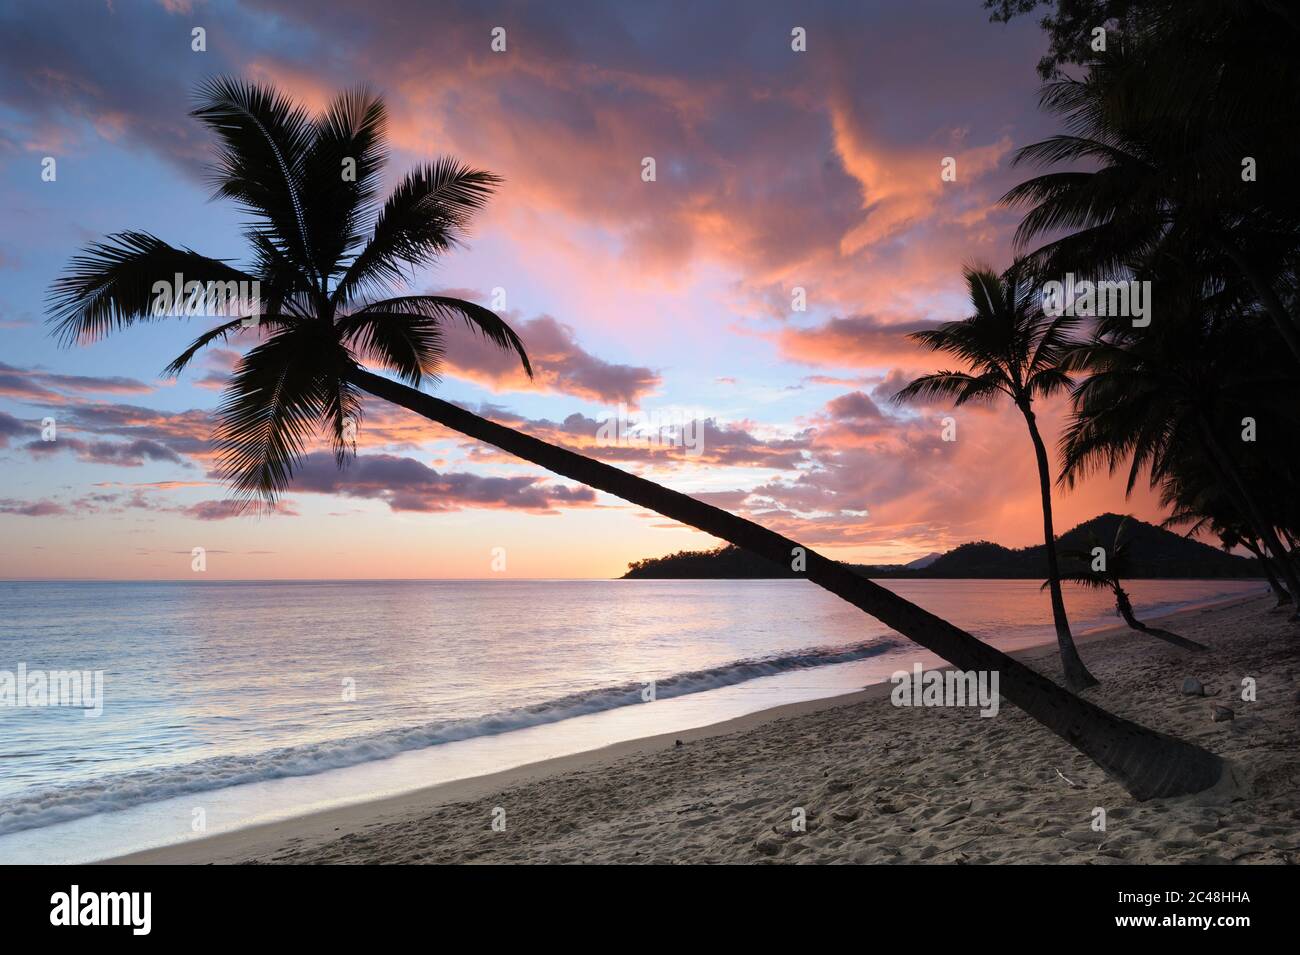 Una palma di cocco appesa obliquamente sull'Oceano Pacifico con un'iconica alba tropicale in piena fioritura a Clifton Beach a Queensland, Australia. Foto Stock